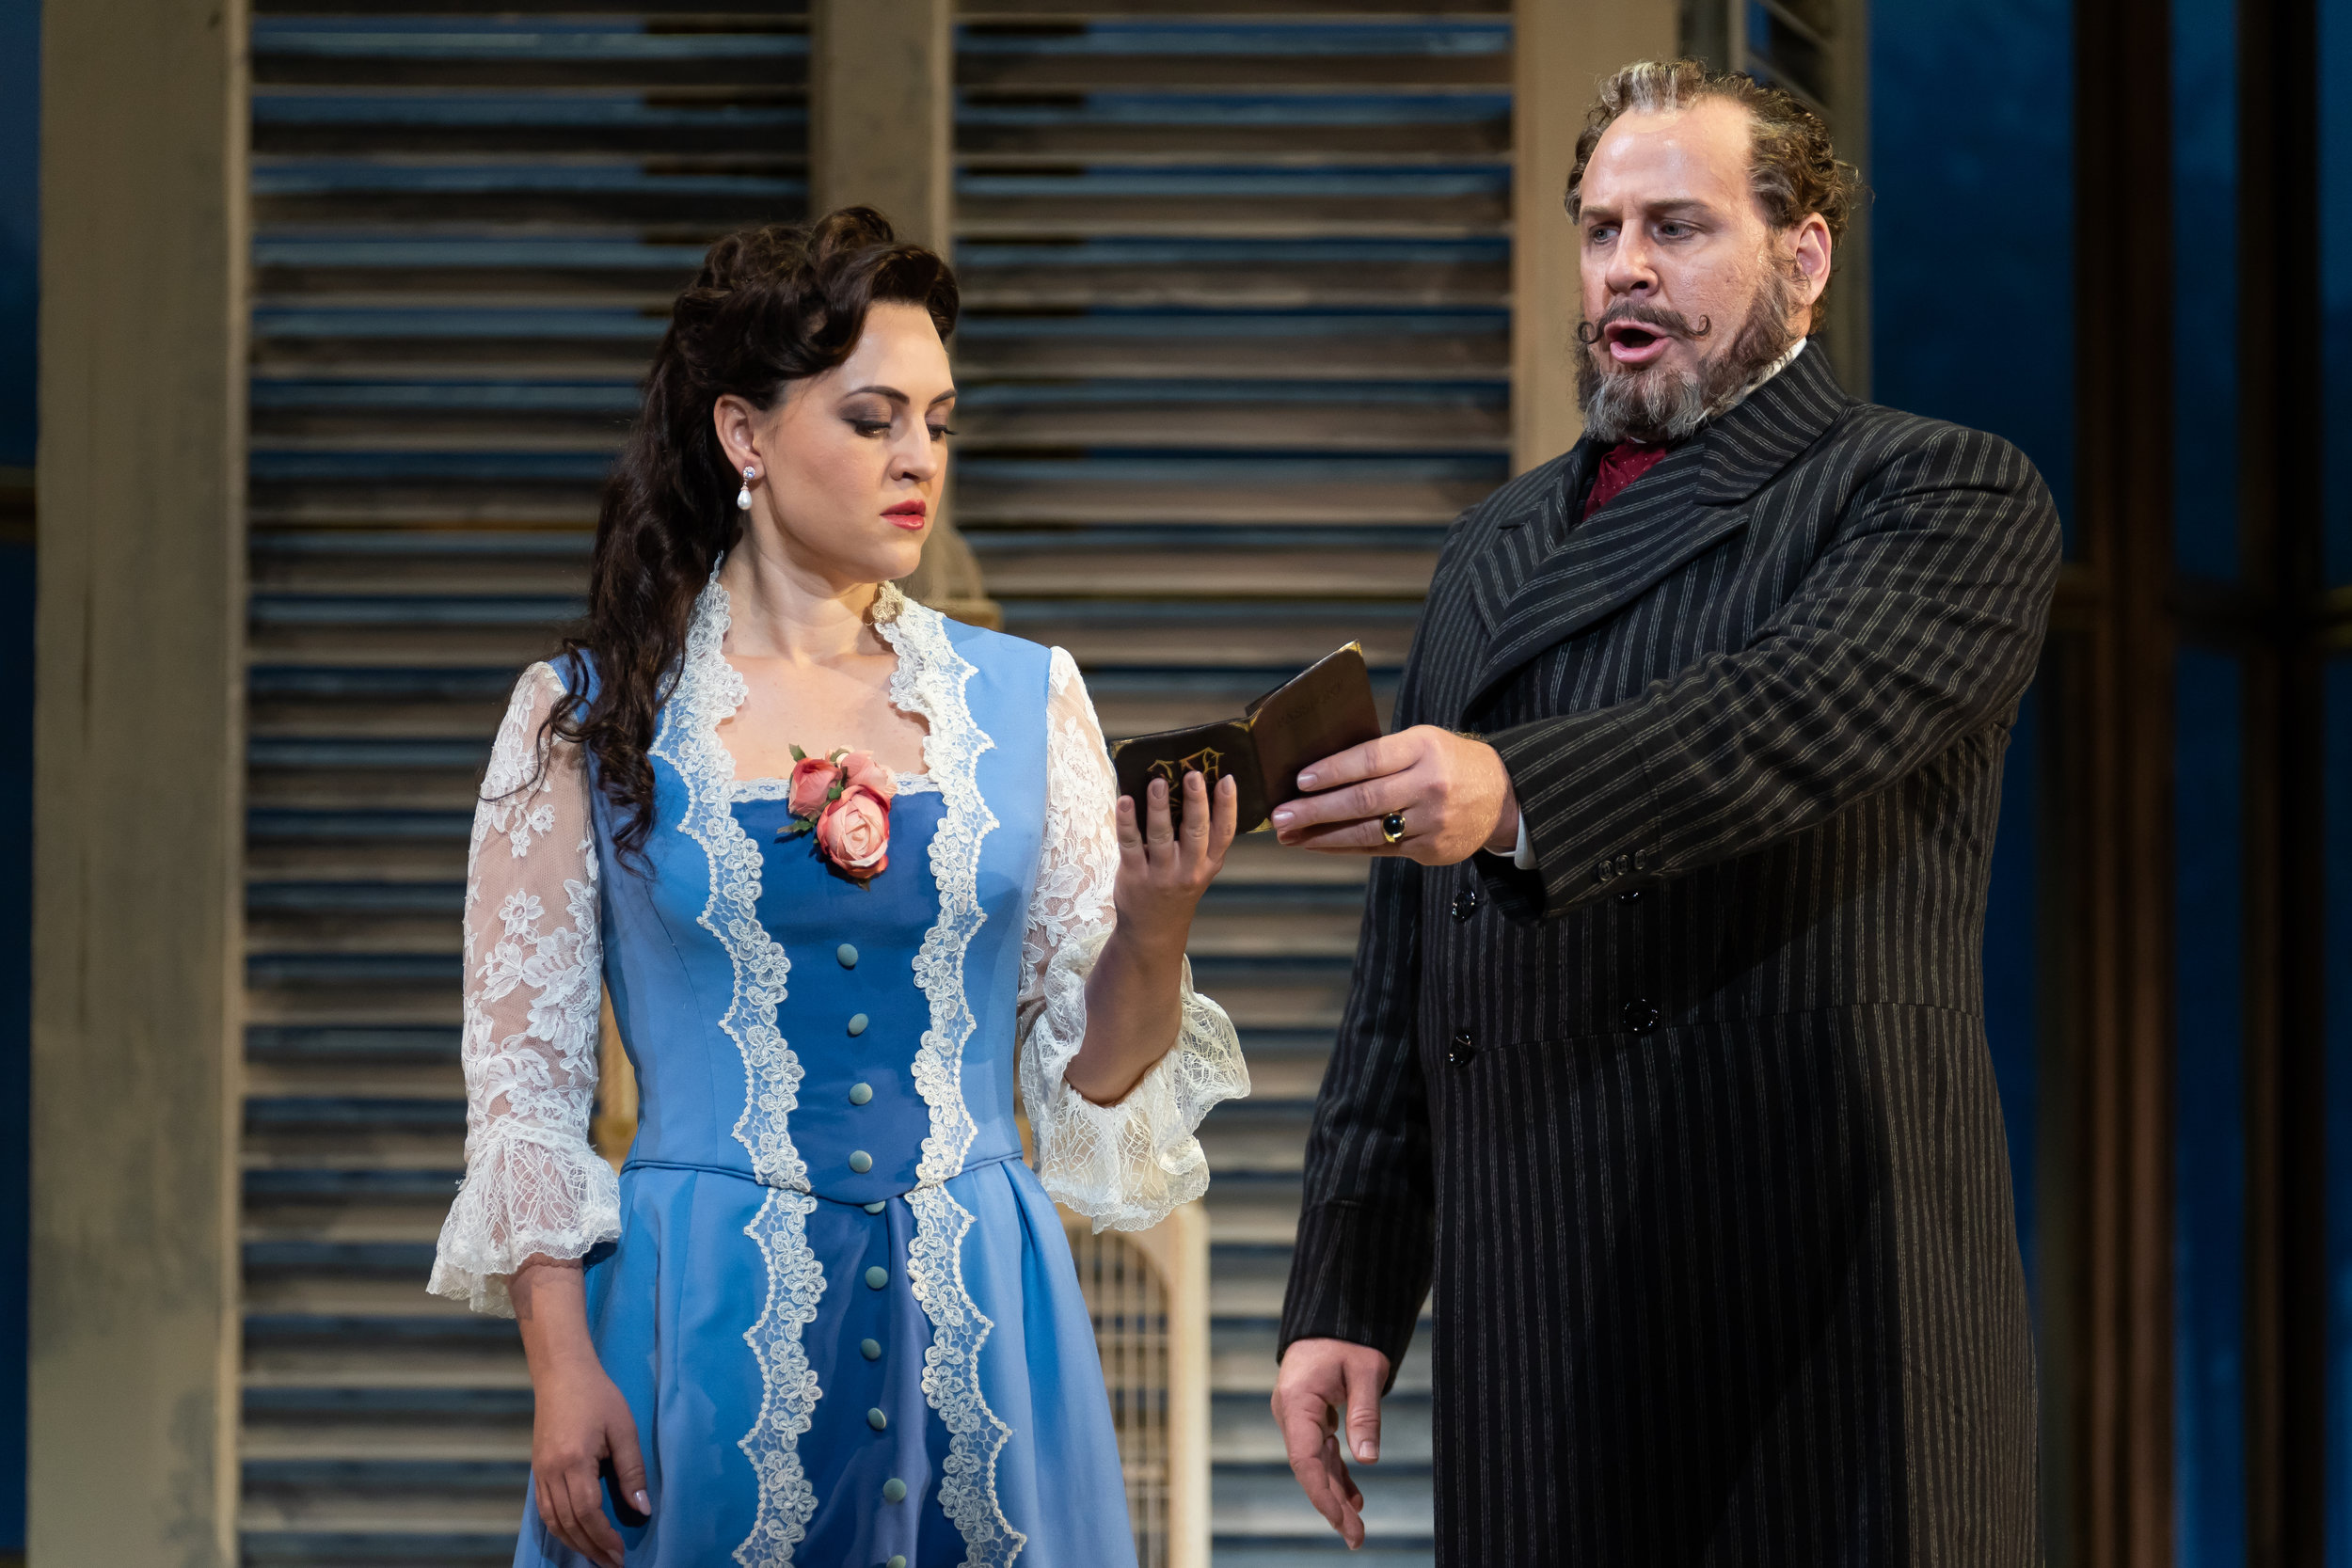 Giorgio Germont (baritone Lucas Meachem) gives Violetta (soprano Venera Gimadieva) an ultimatum in WNO's La traviata 2018 production_credit Scott Suchman.JPG